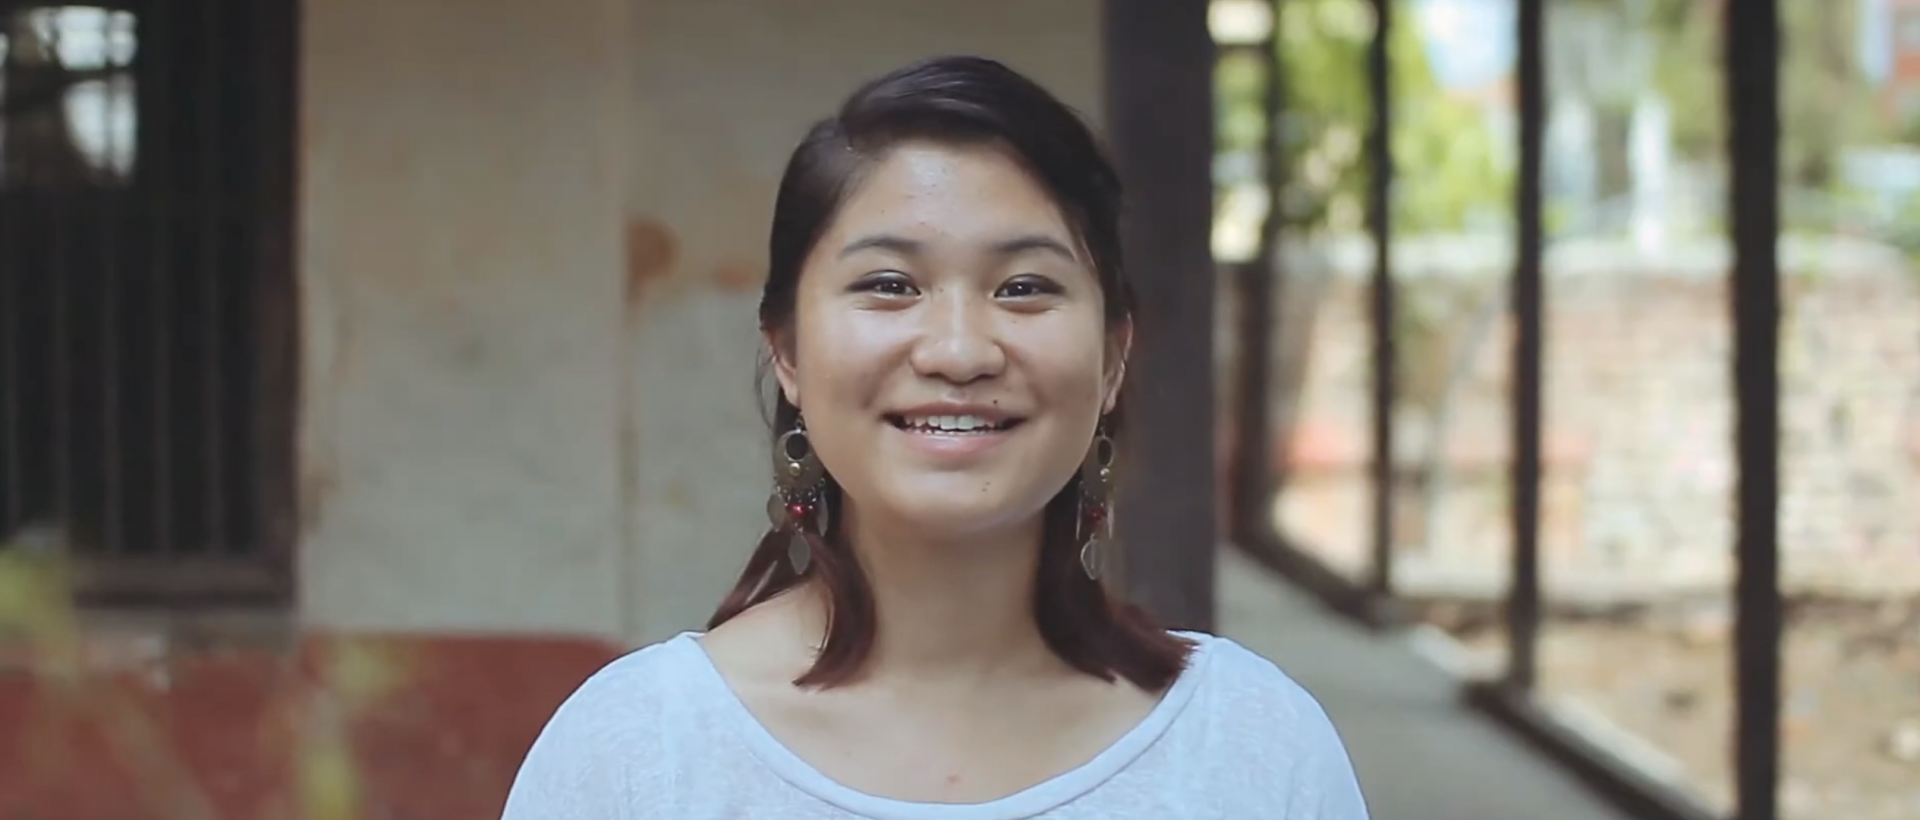 August’s Project Partner: Women LEAD Nepal